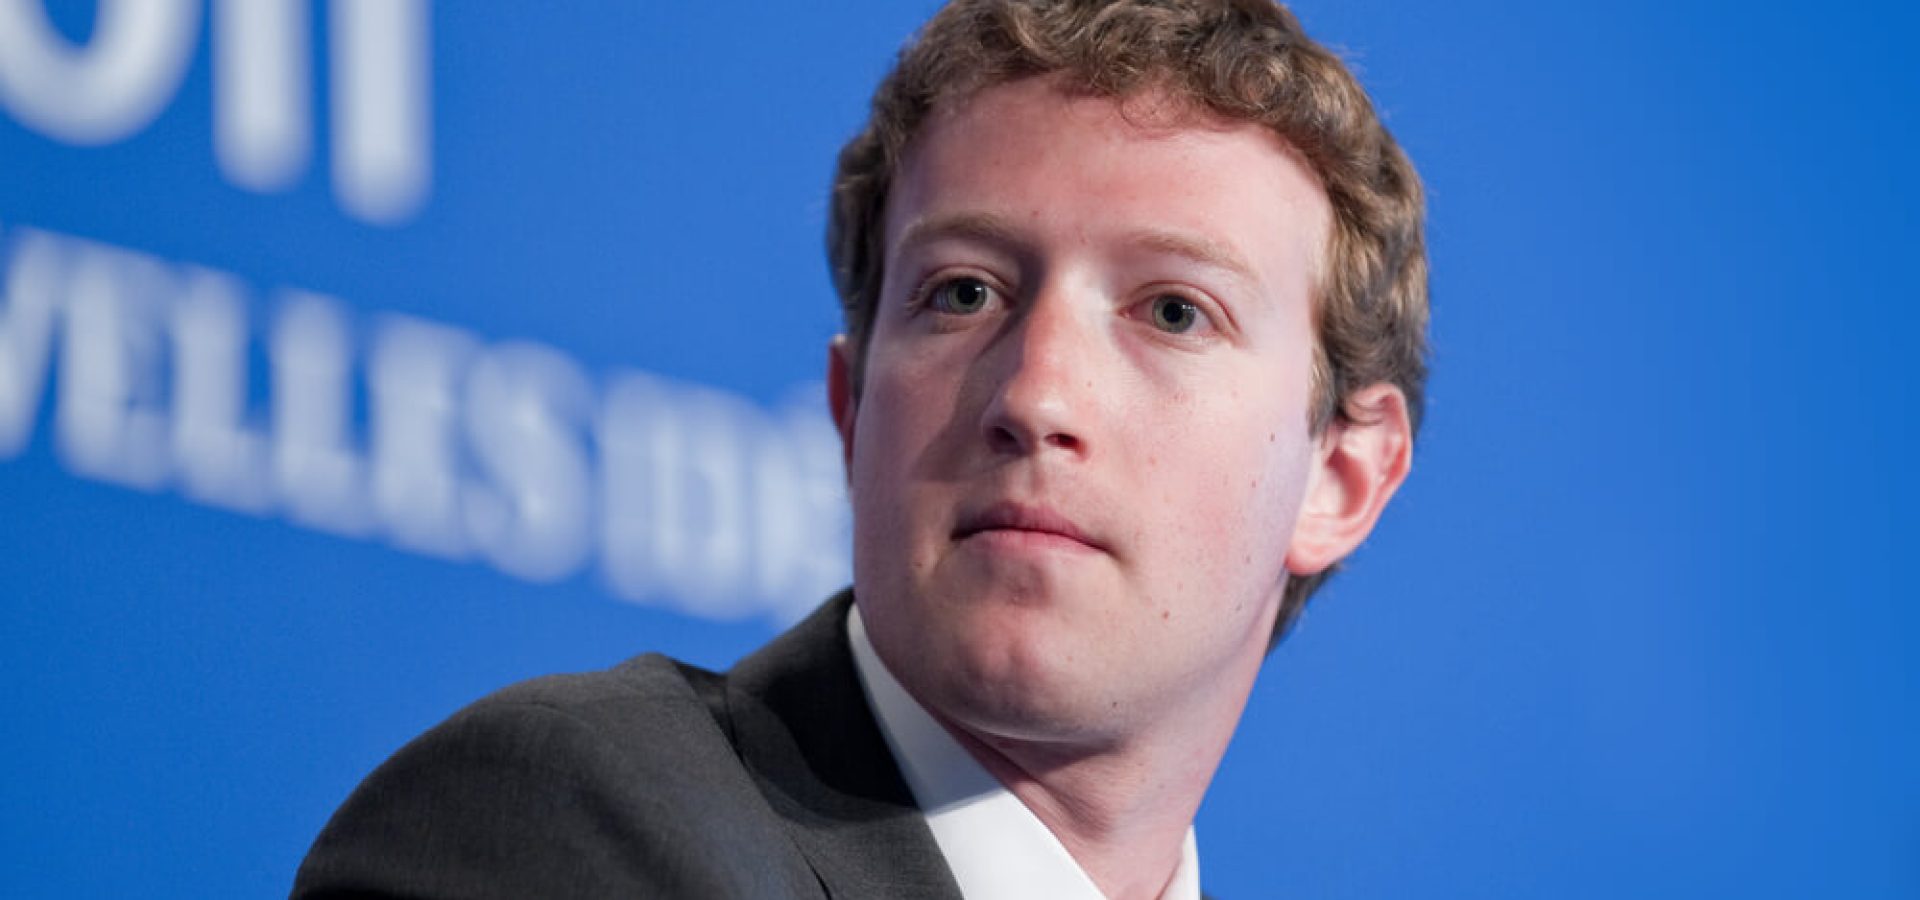 Facebook CEO Mark Zuckerberg photo.